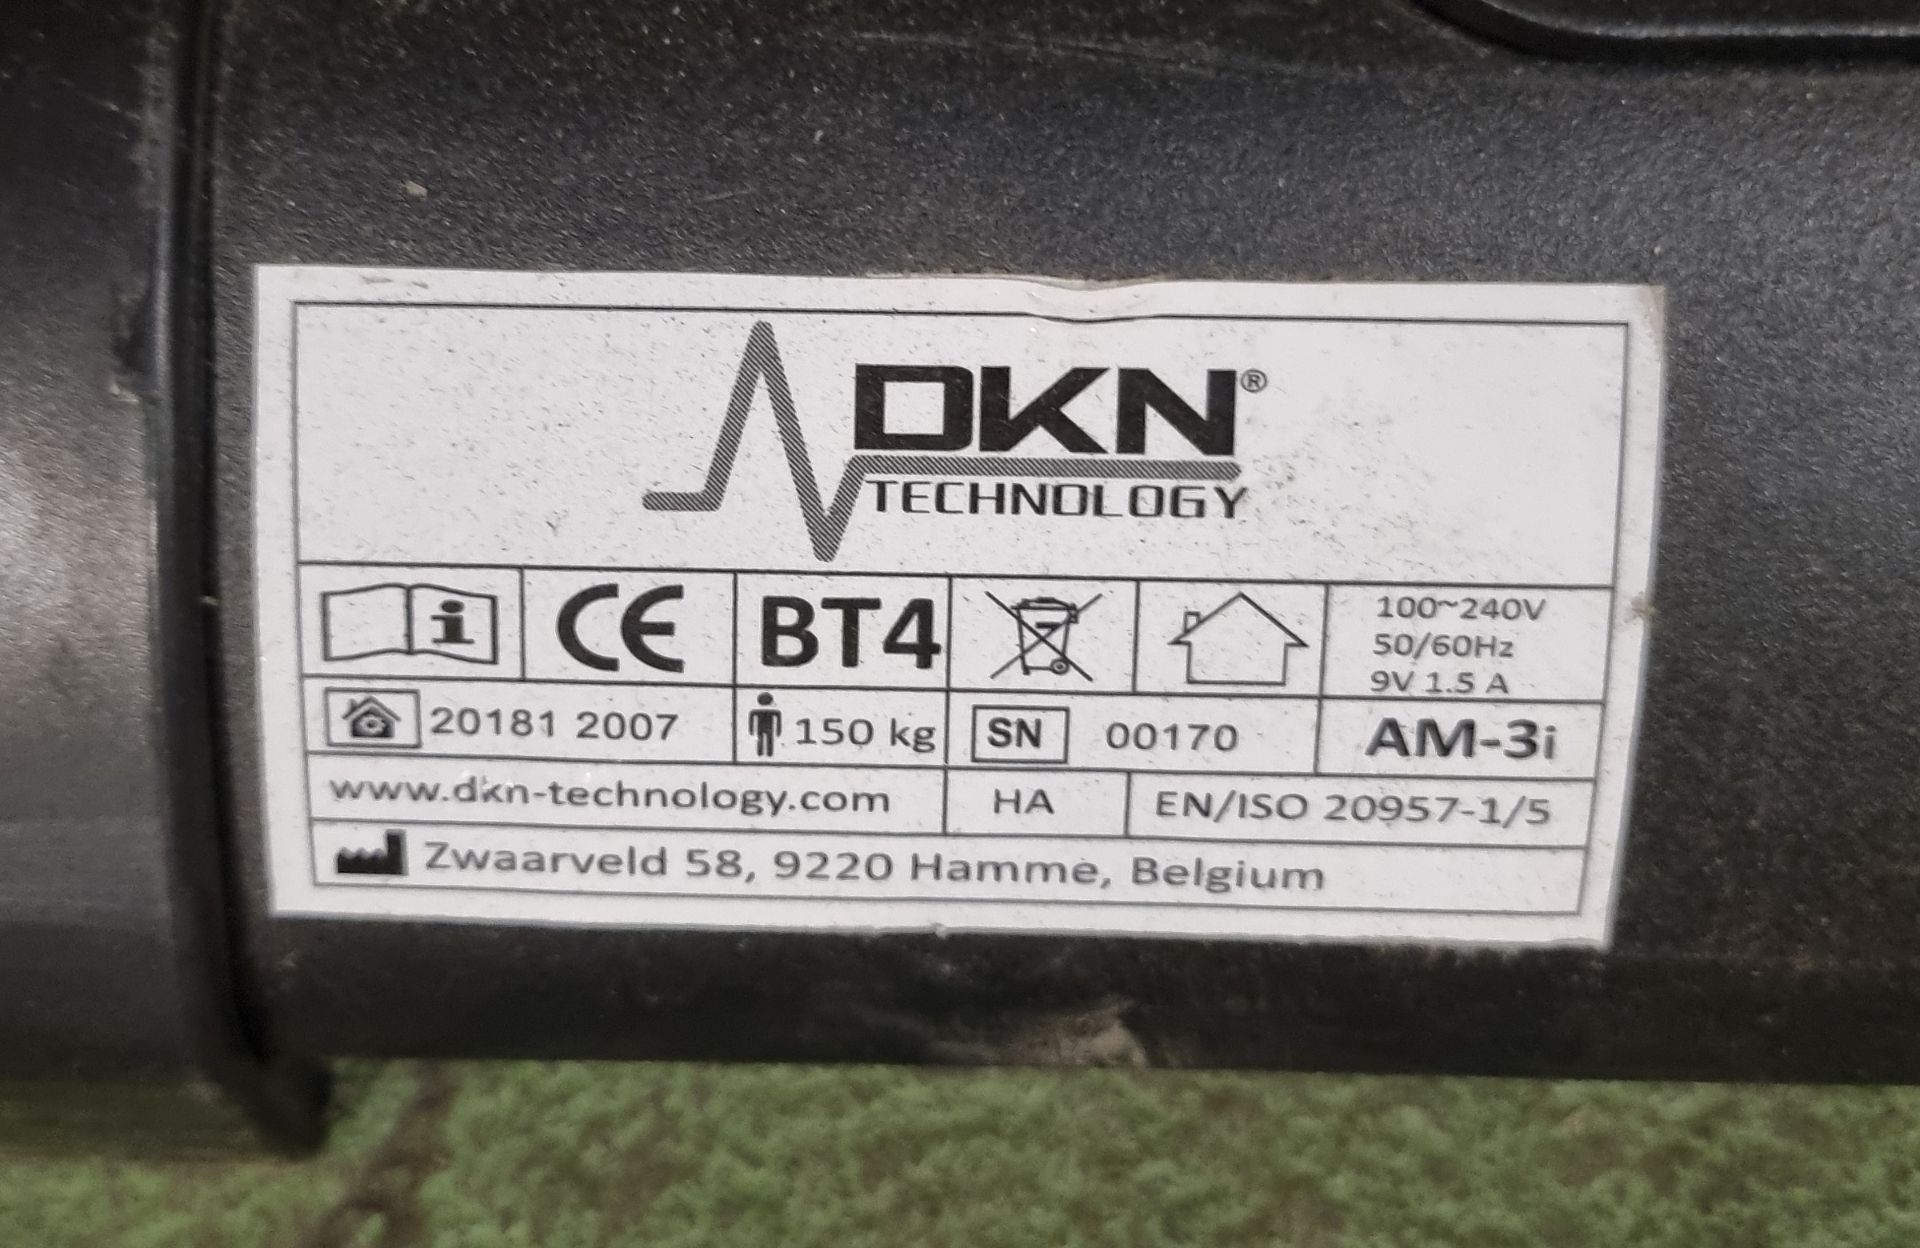 DKN AM3i Upright bike - L95 x W60 x H130 - Image 5 of 5